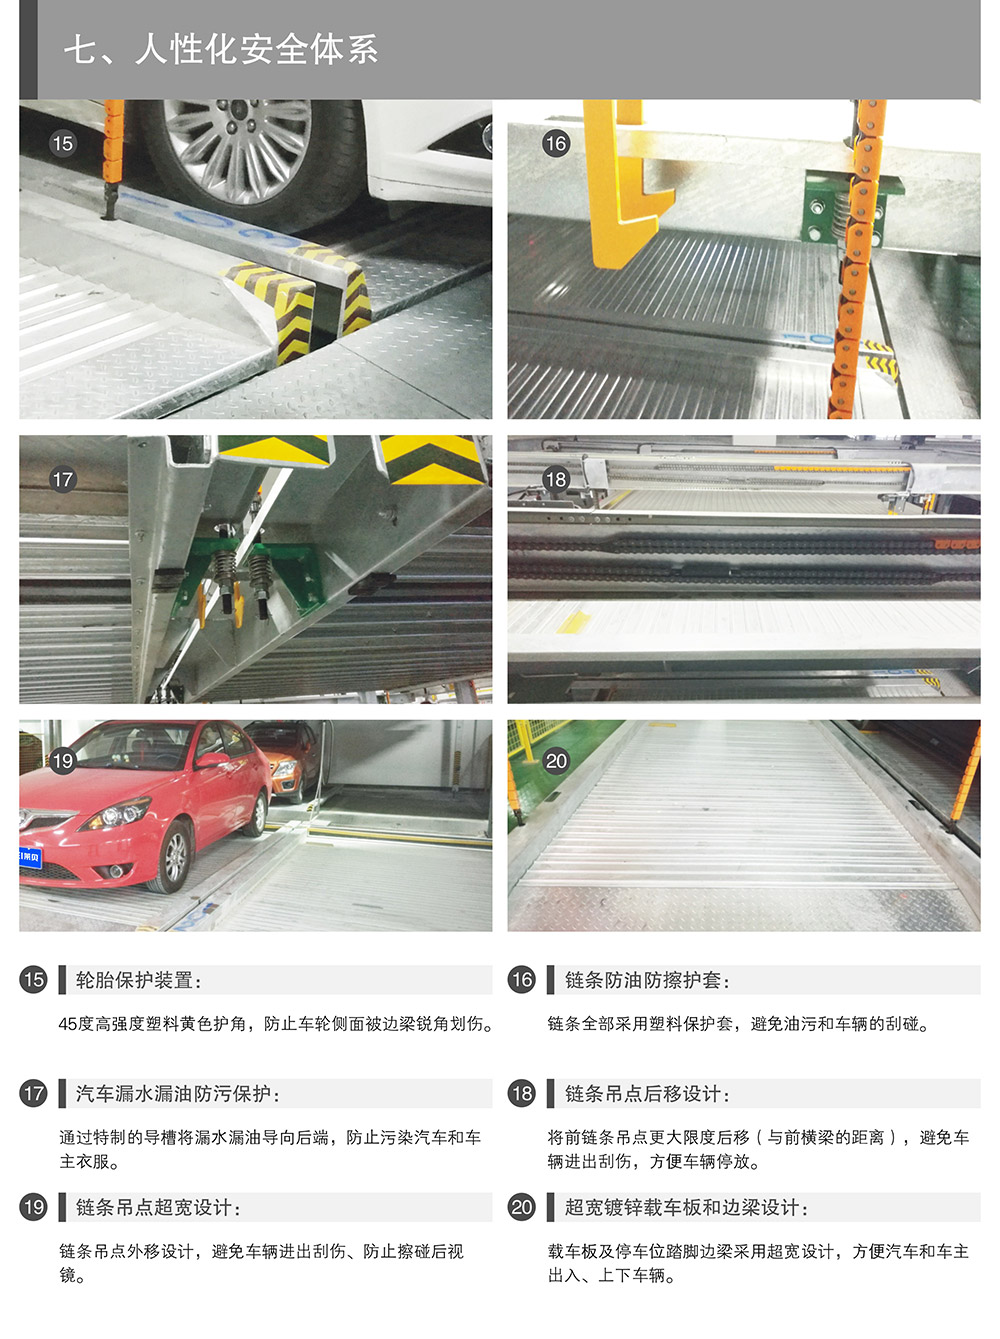 云南昆明PSH升降横移立体停车设备人性化安全体系.jpg